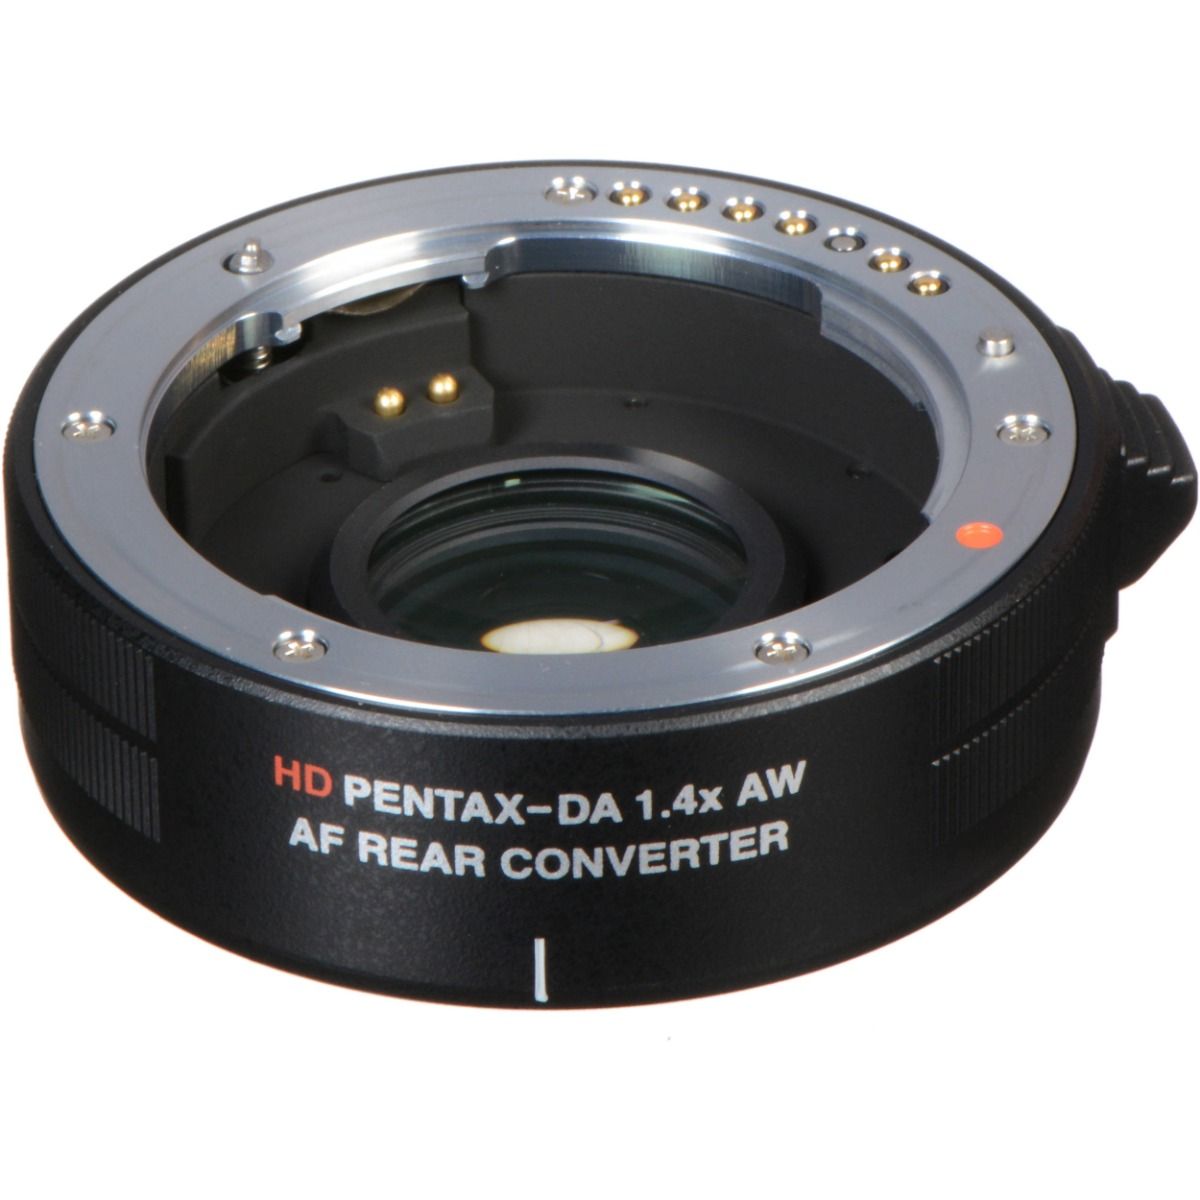 Pentax 1.4X AW HD PENTAX-DA AF Rear Converter